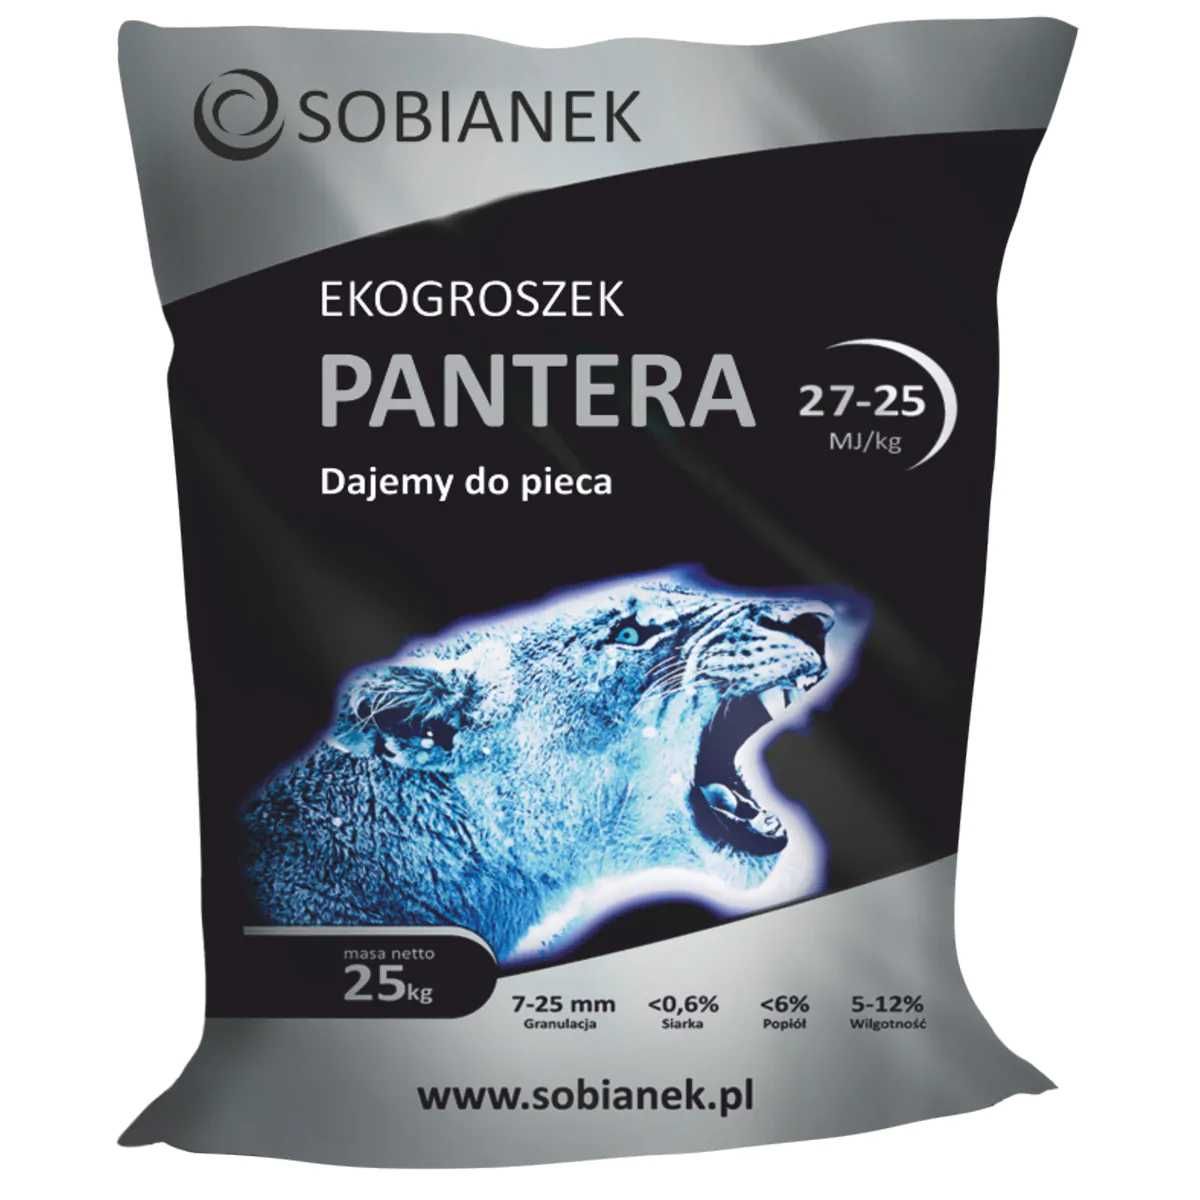 Ekogroszek PANTERA Sobianek groszek